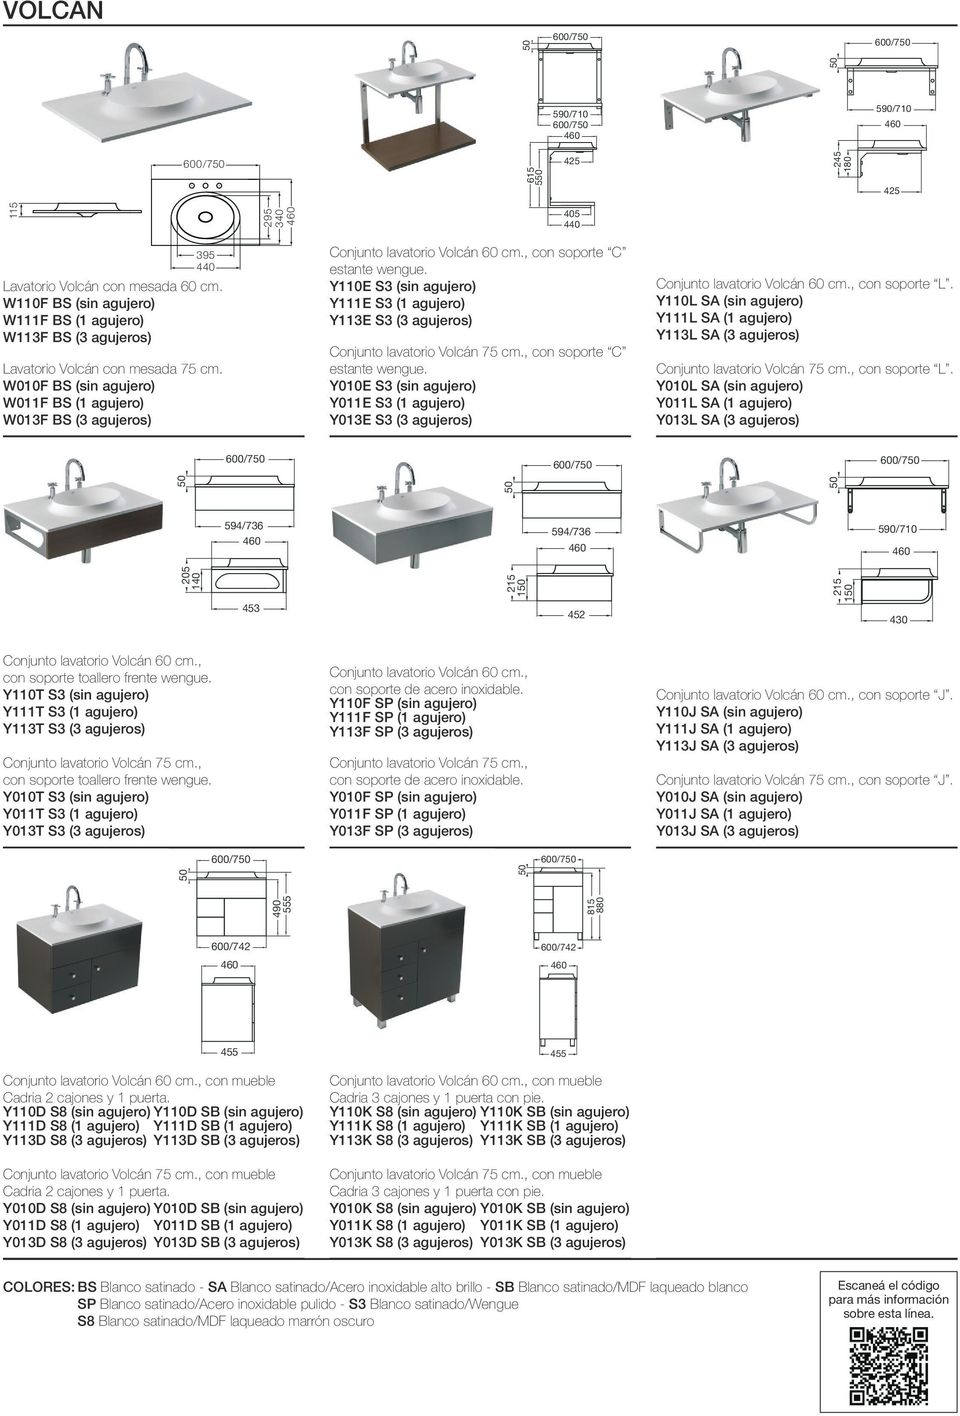 W010F BS (sin agujero) W011F BS (1 agujero) W013F BS (3 agujeros) Conjunto lavatorio Volcán 60 cm., con soporte C estante wengue.